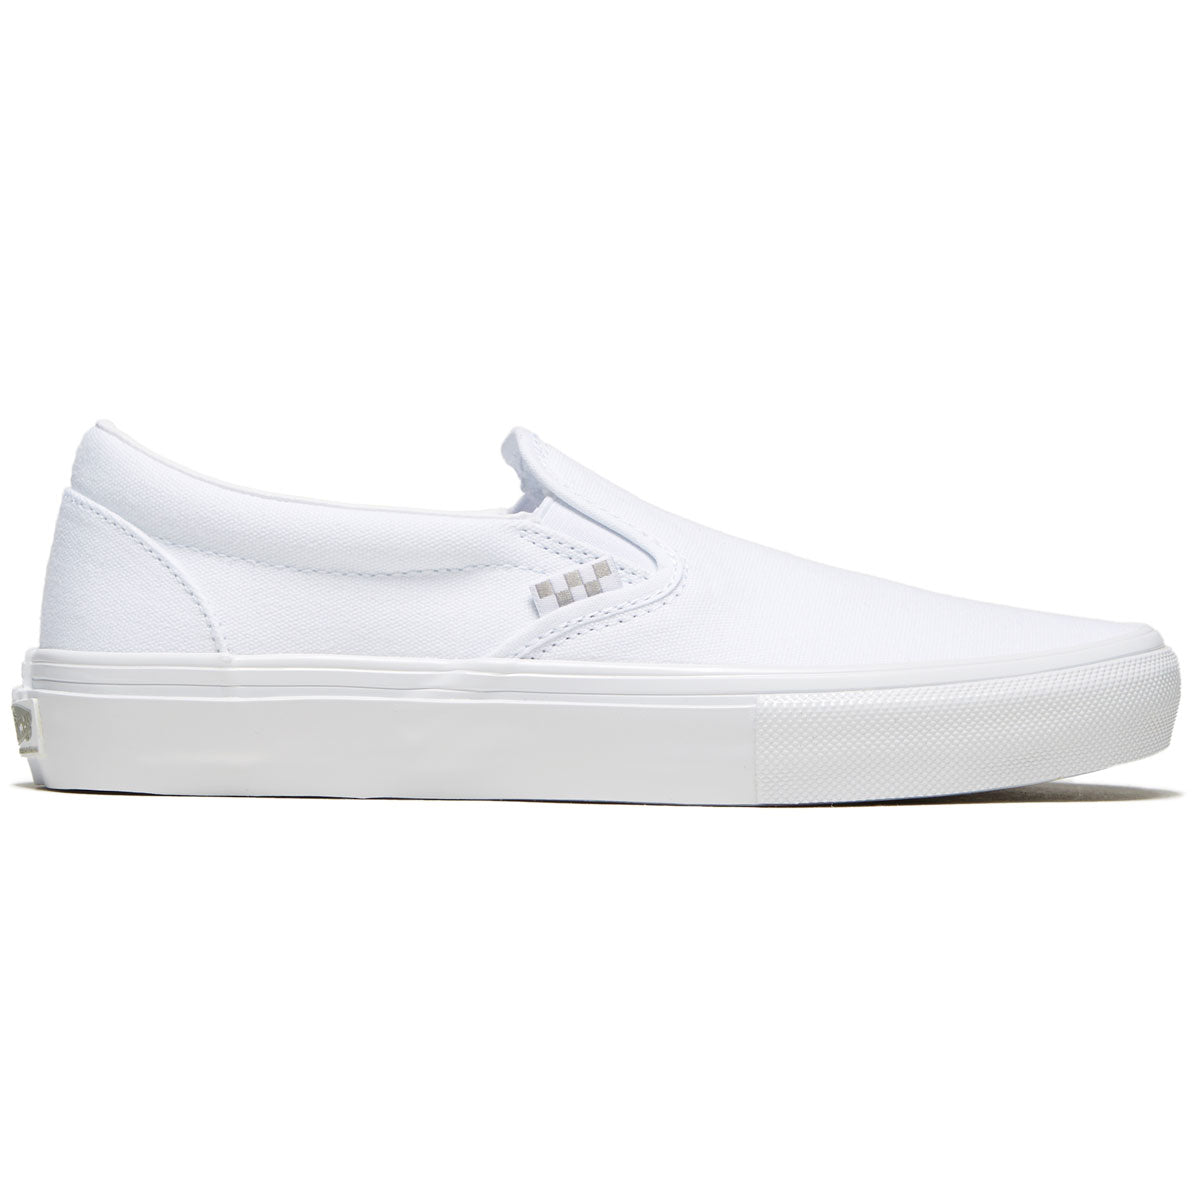 Vans Skate Slip-on Shoes - True White image 1